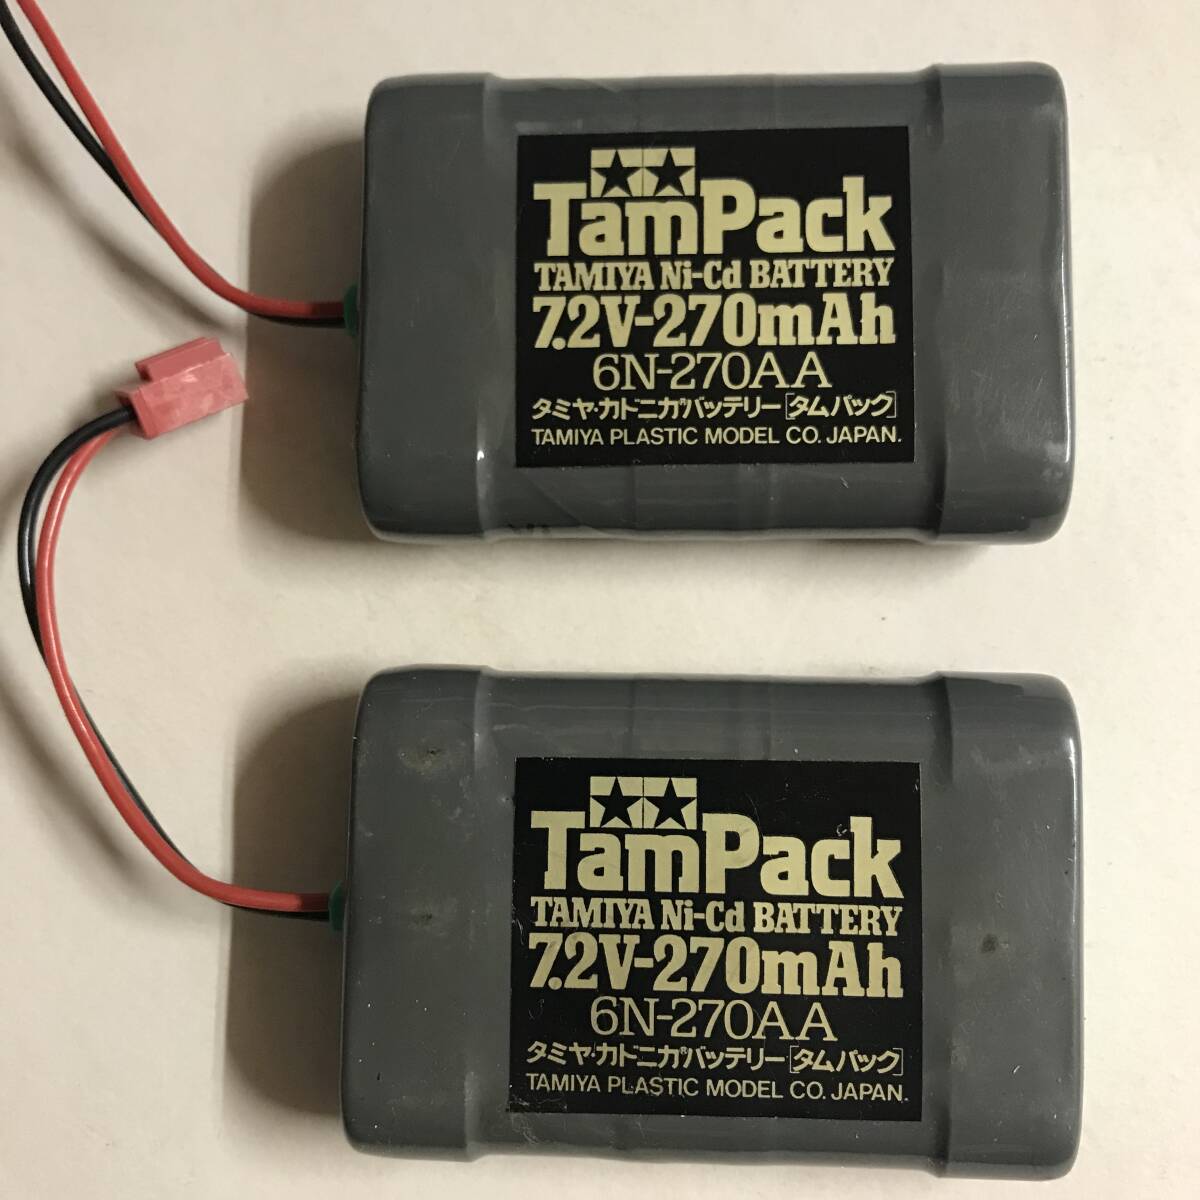 TamPacktam упаковка 7.2V 270mAh Tamiya kadonika аккумулятор 6N-270AA 2 шт 